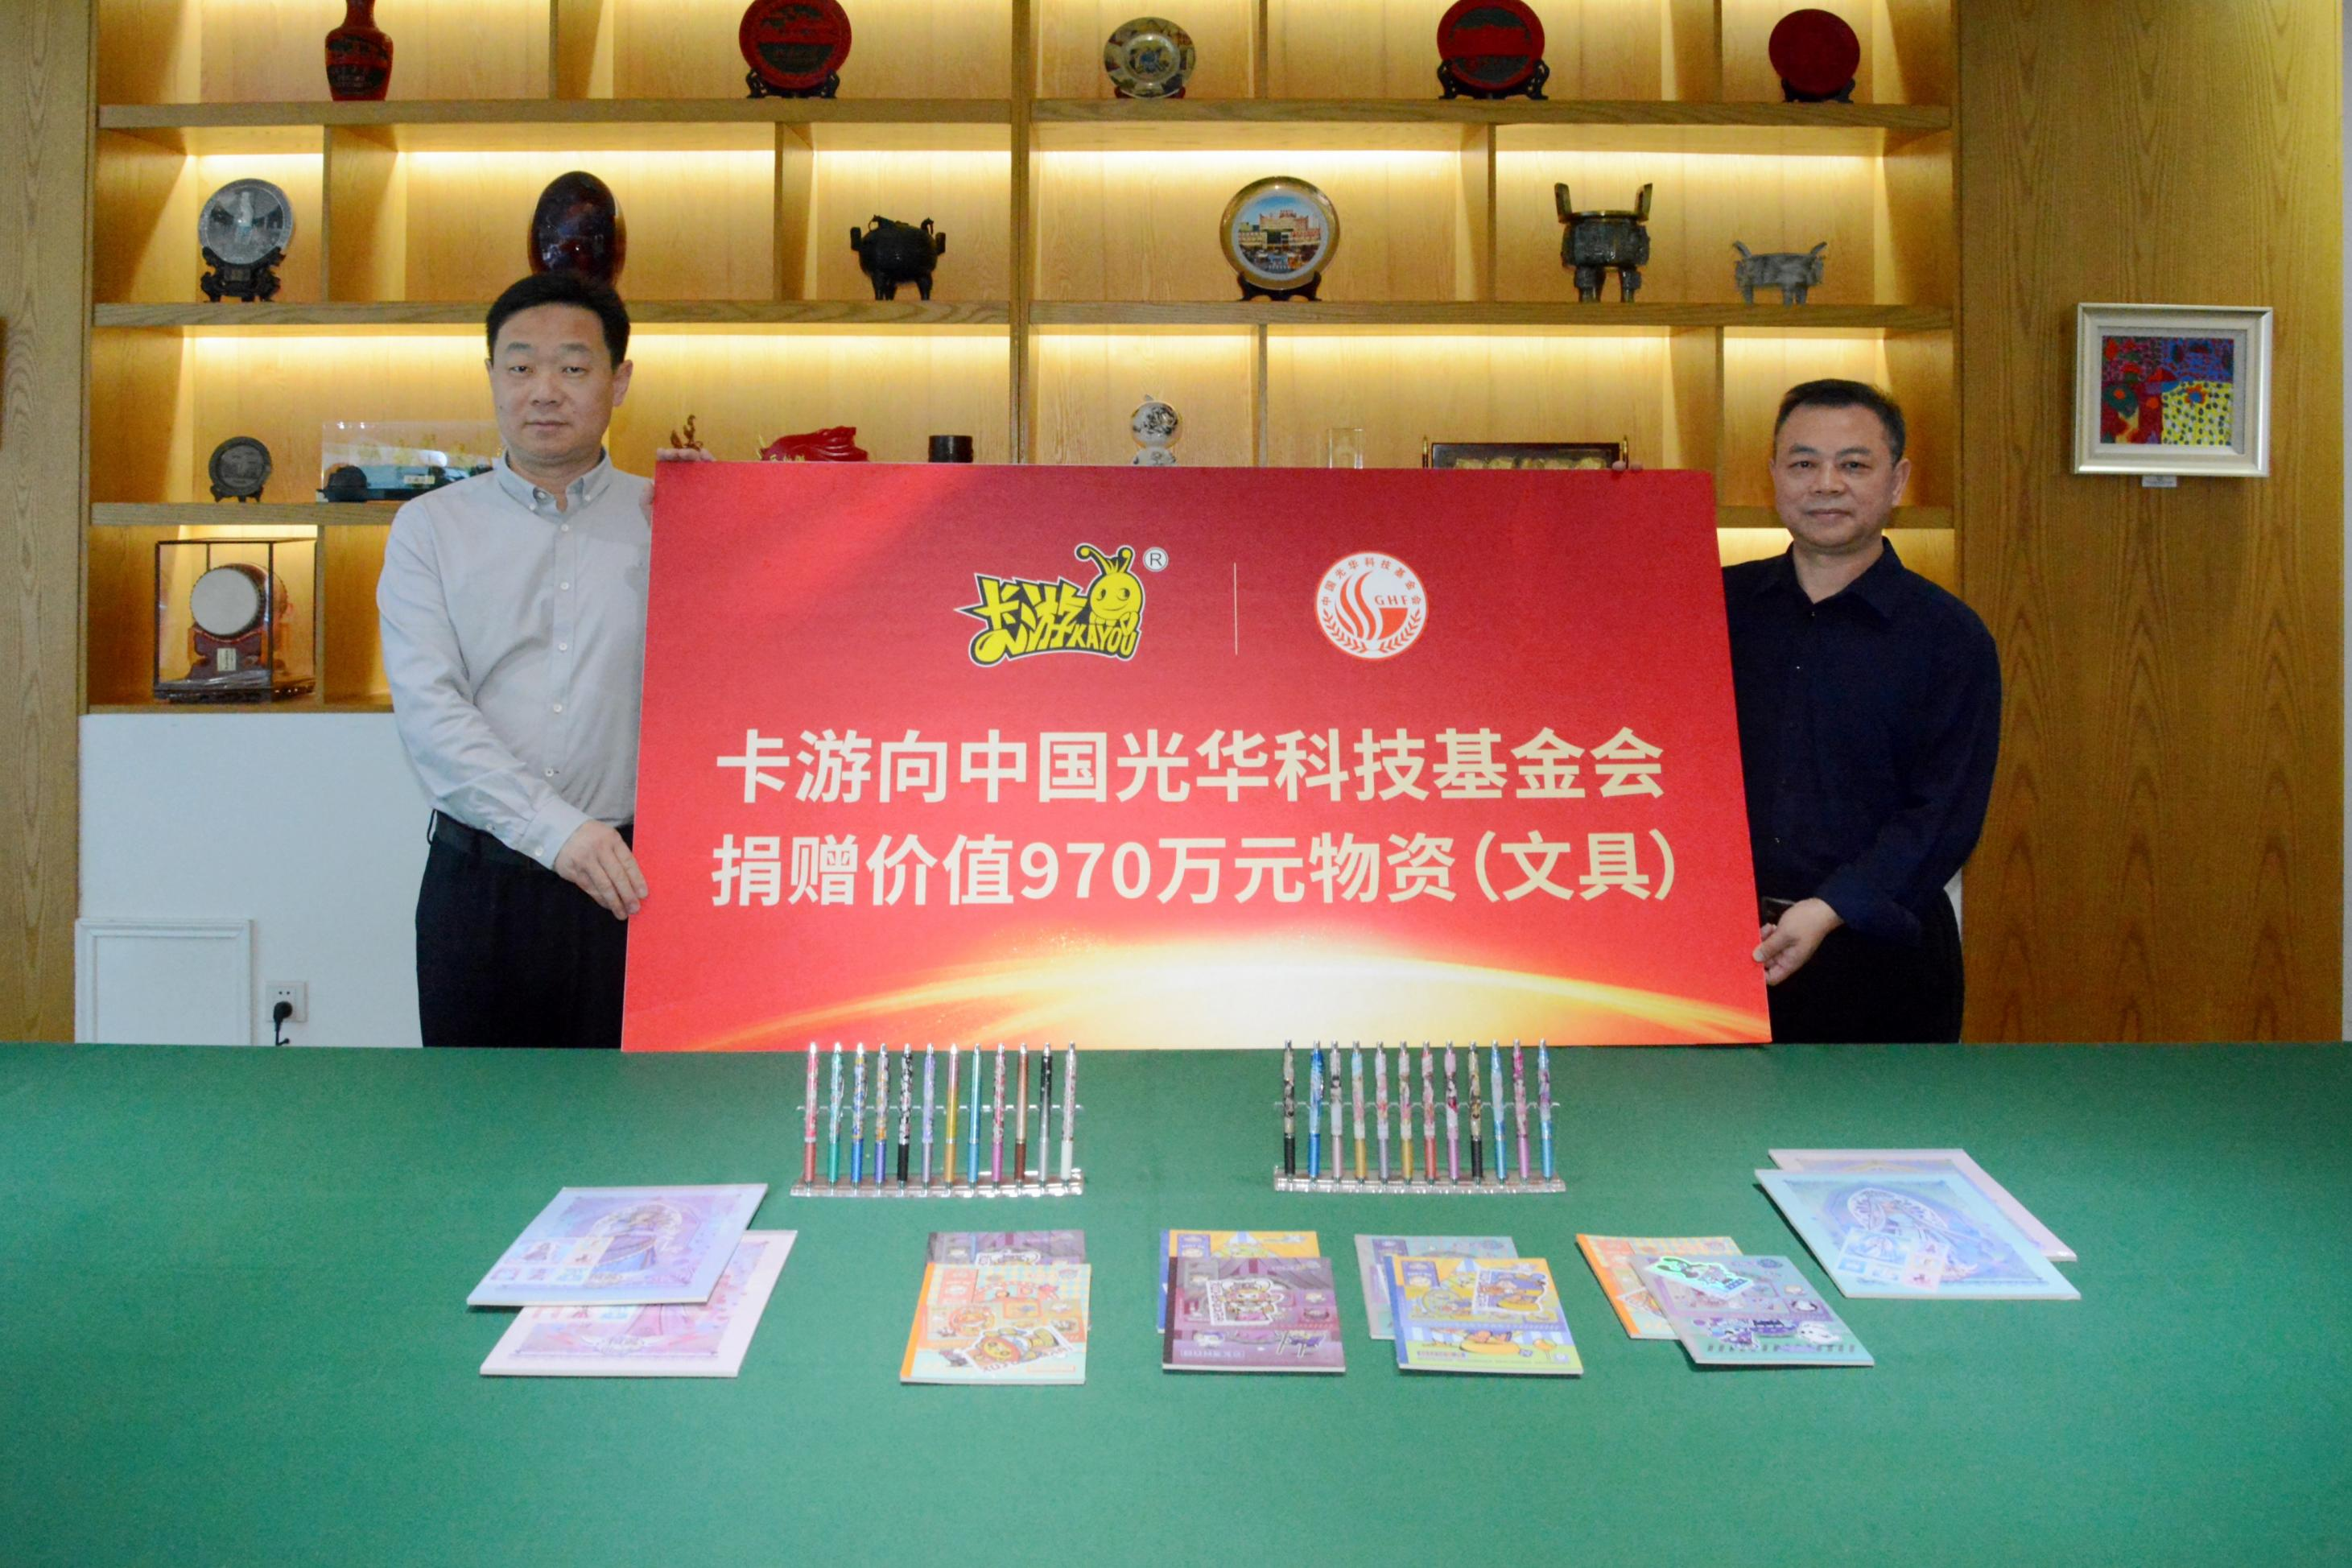 卡游动漫向中国光华科技基金会捐赠970万元文具 助力乡村公益教育事业